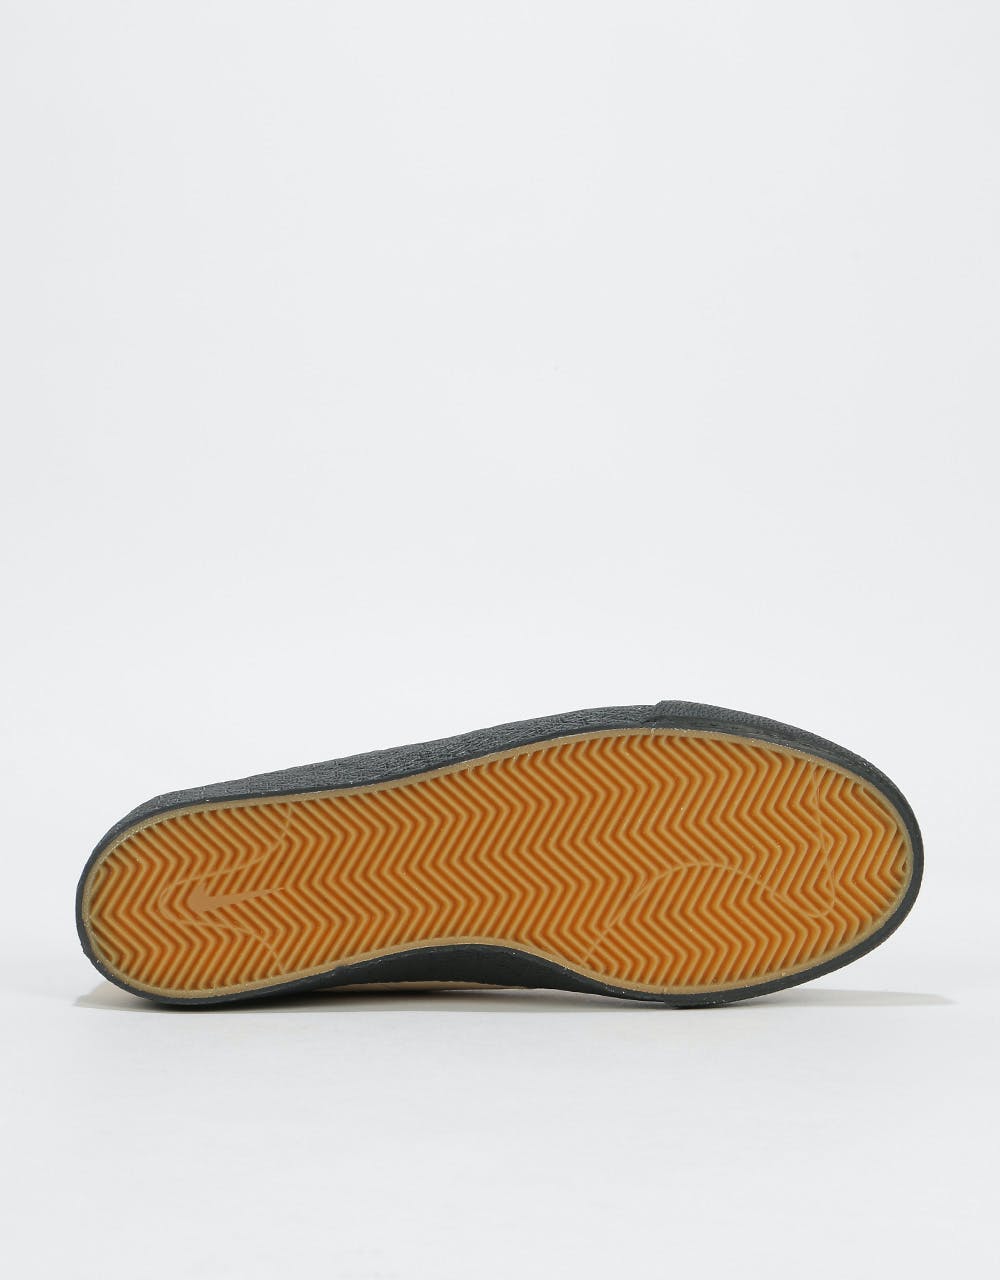 Nike SB Zoom Bruin Ultra Skate Shoes - Desert Ore/Black